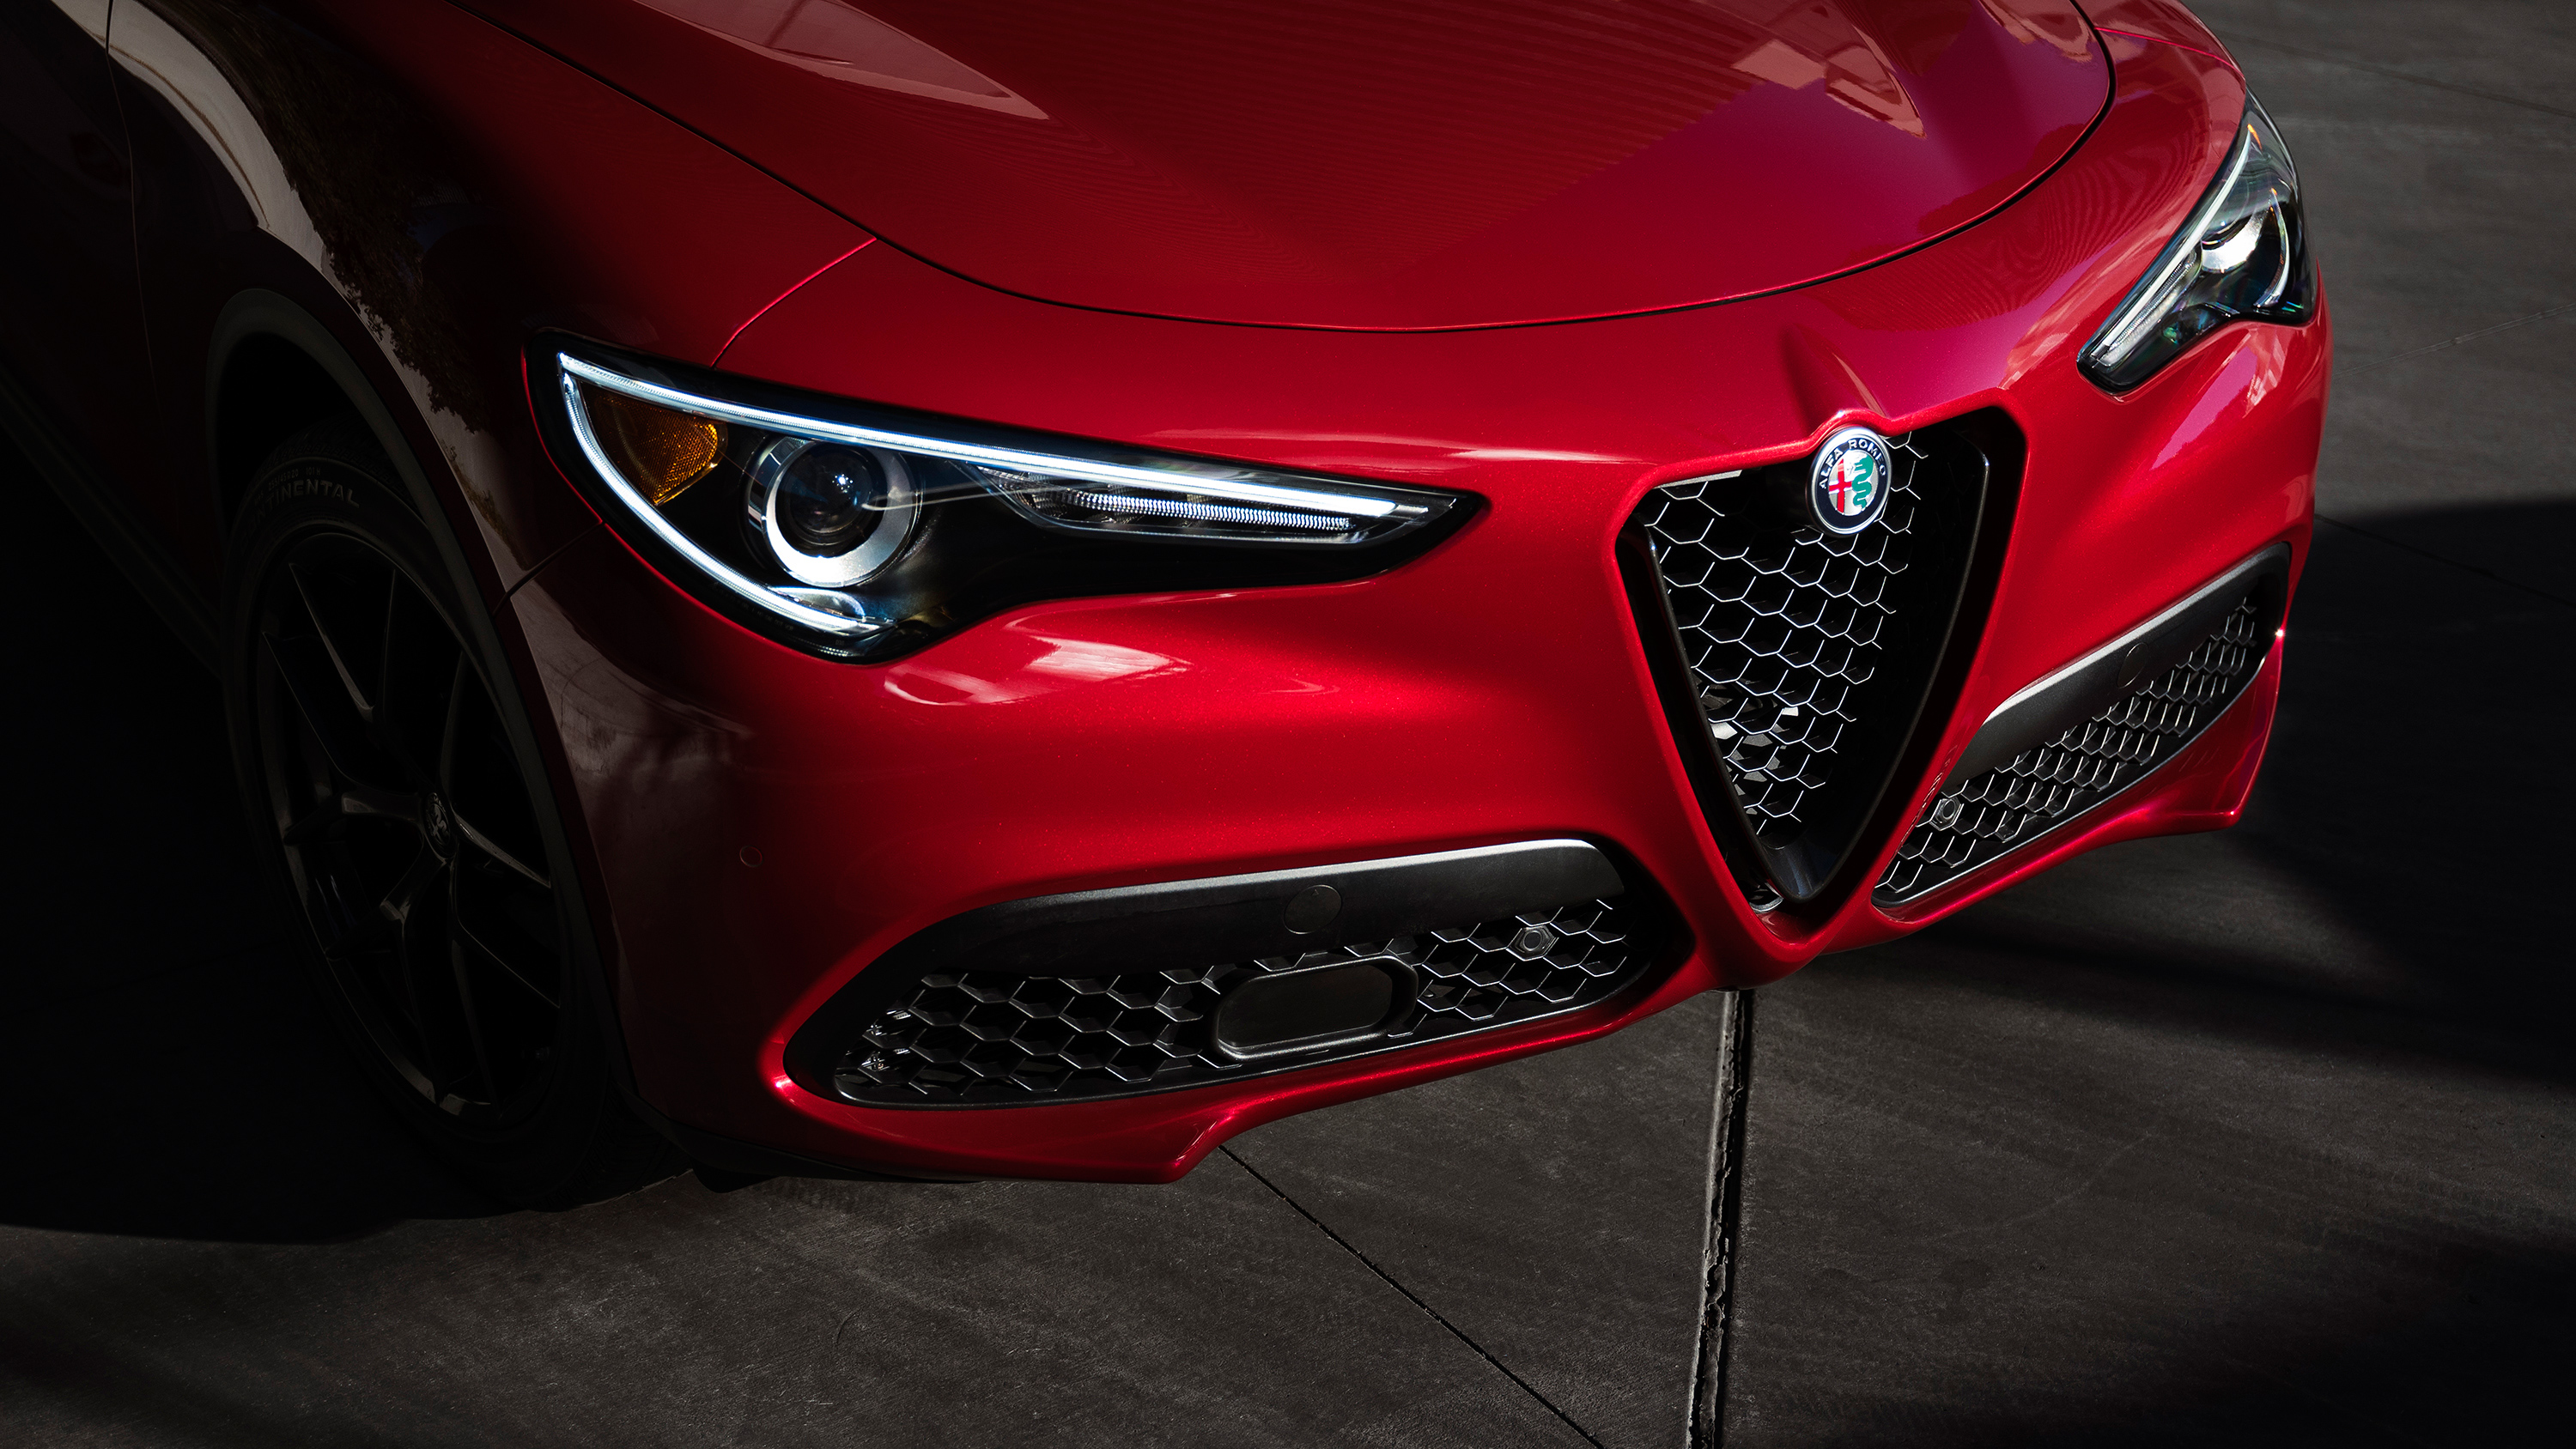 2018 Alfa Romeo Stelvio Nero Edizione 2 Wallpaper - HD Car Wallpapers ...